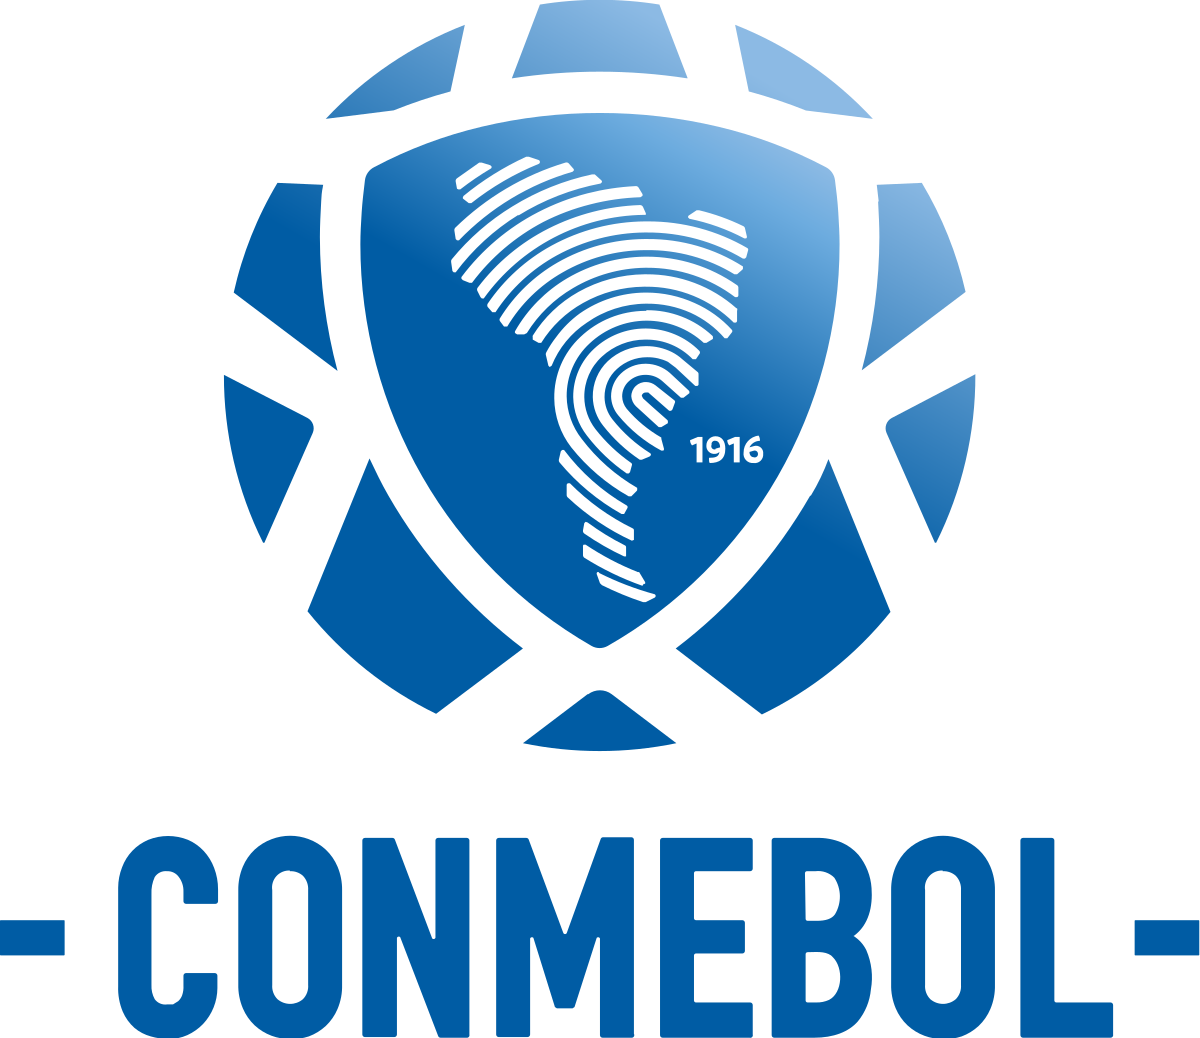 CONMEBOL_logo_(2017).svg